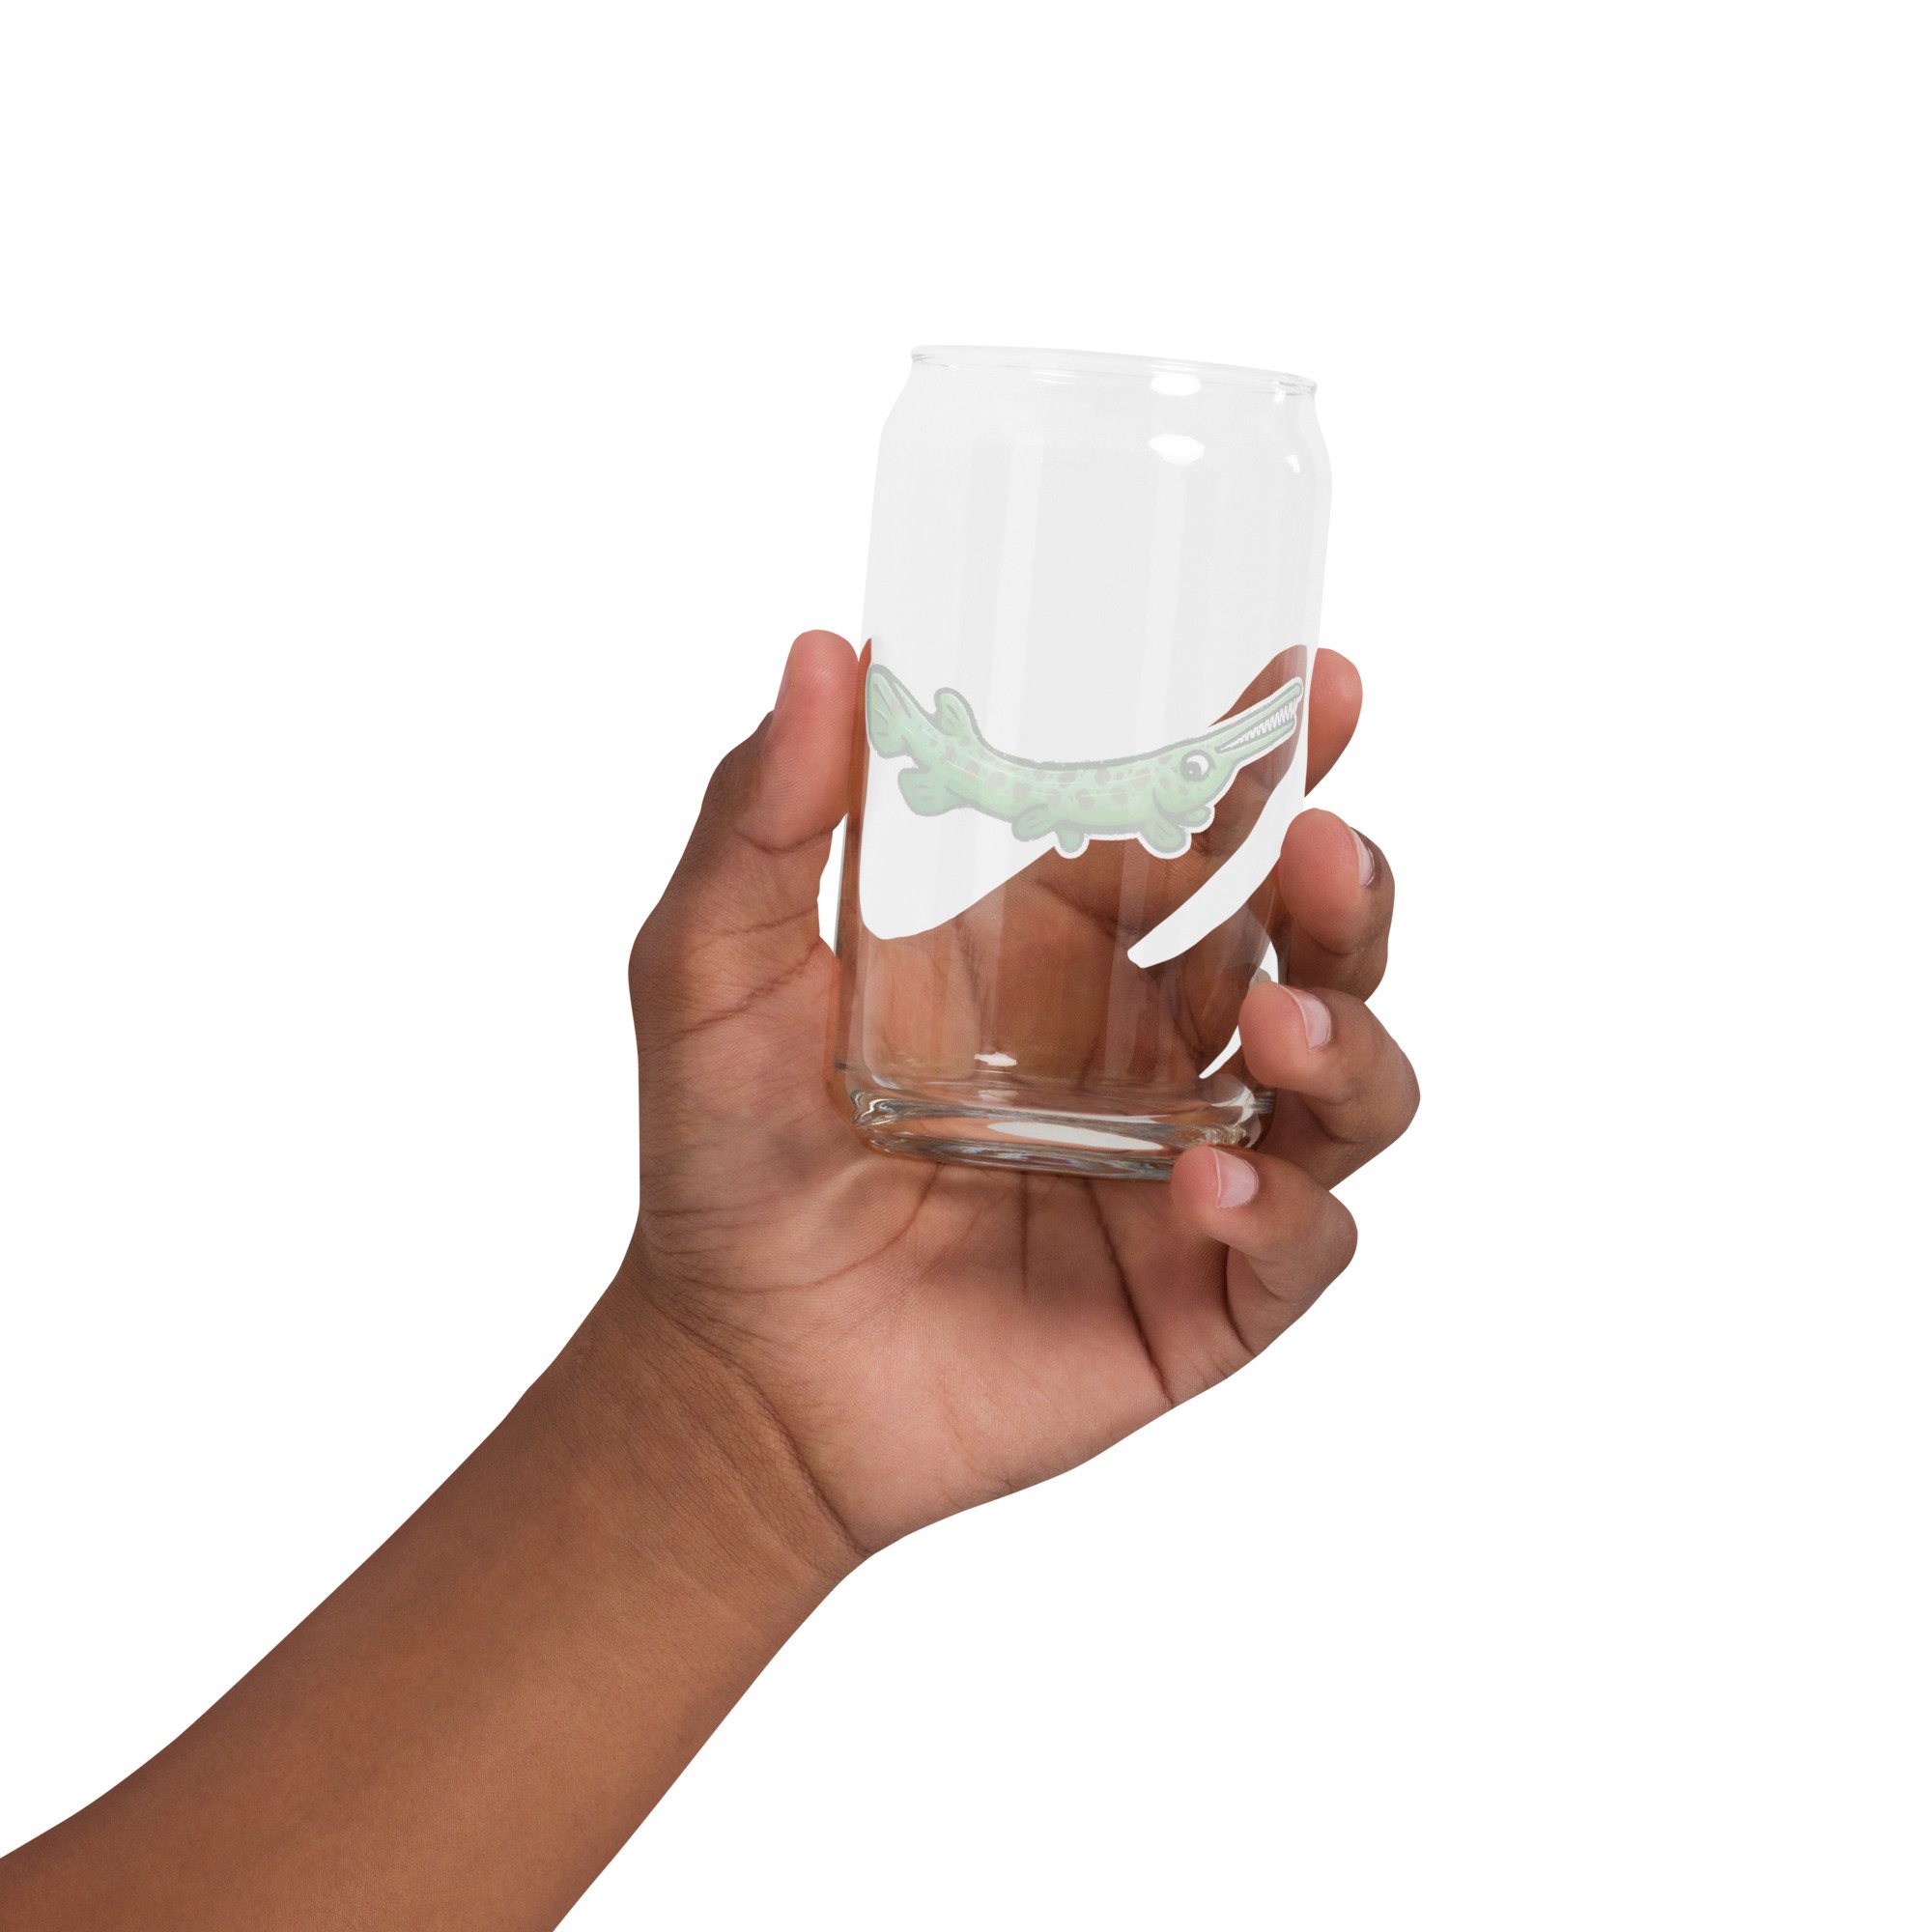 Garth Gar Can-shaped glass